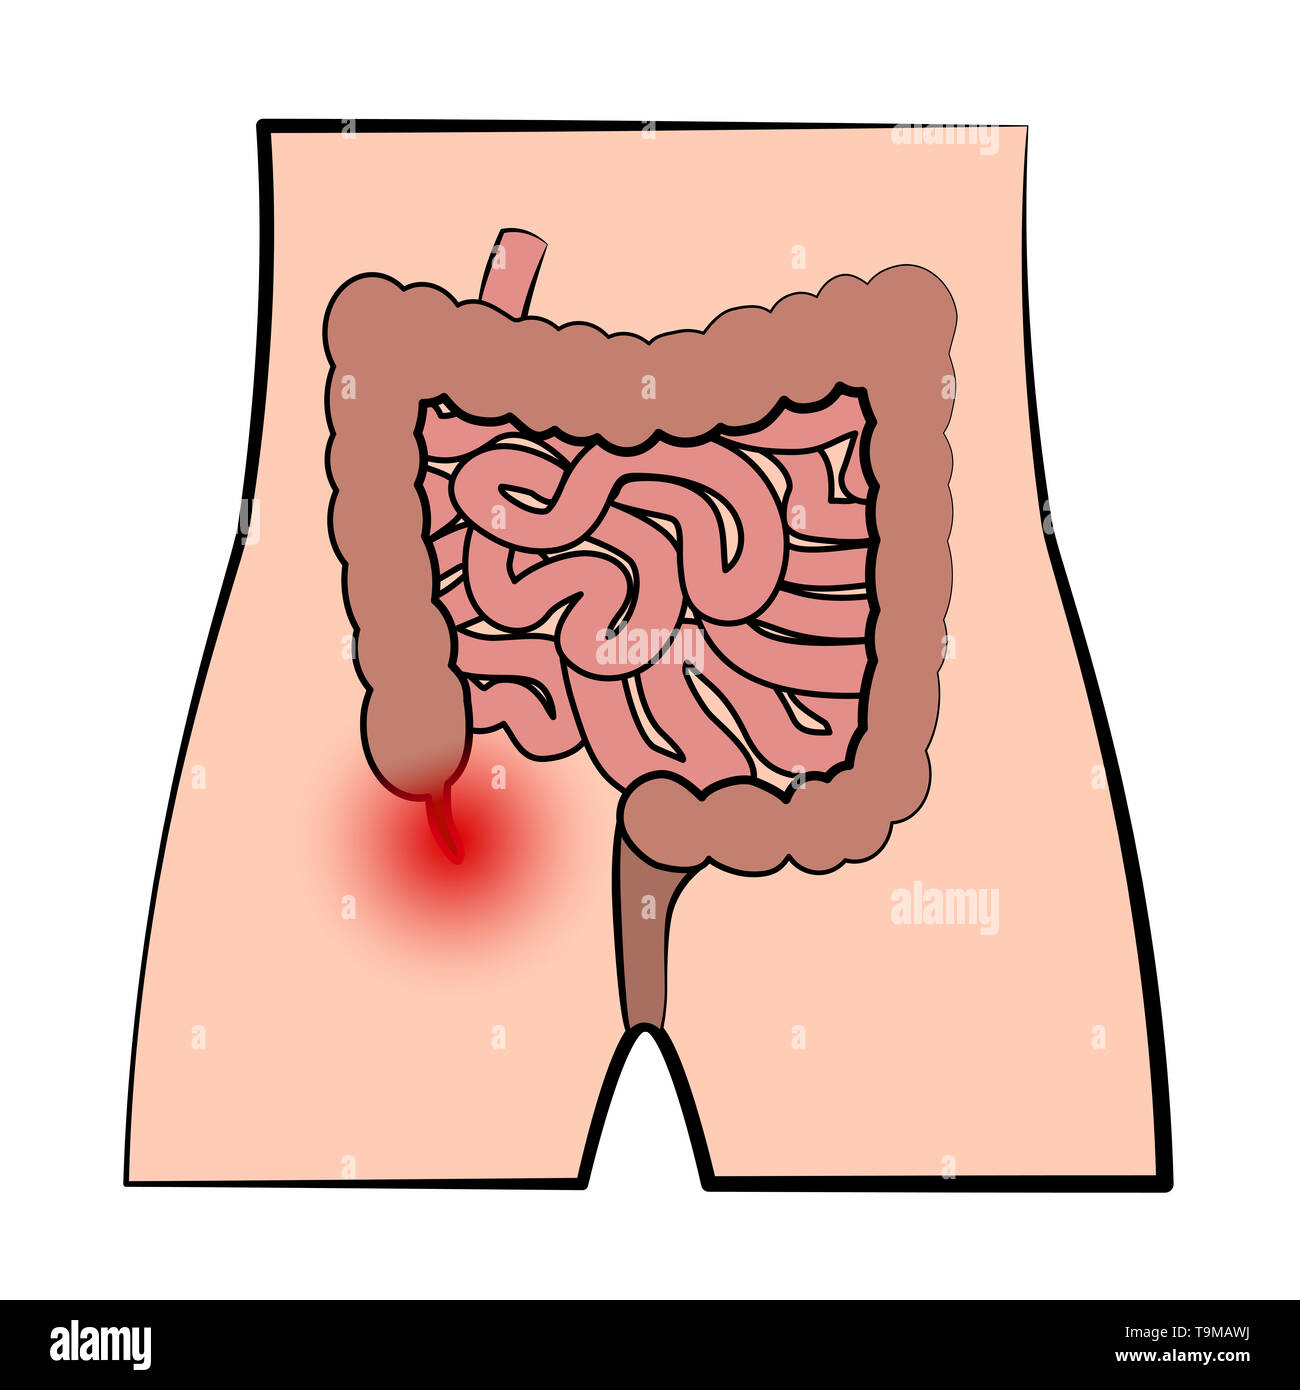 Inflammation de l'appendice. Représentation schématique de l'appendicite et le système digestif sur fond blanc. Banque D'Images